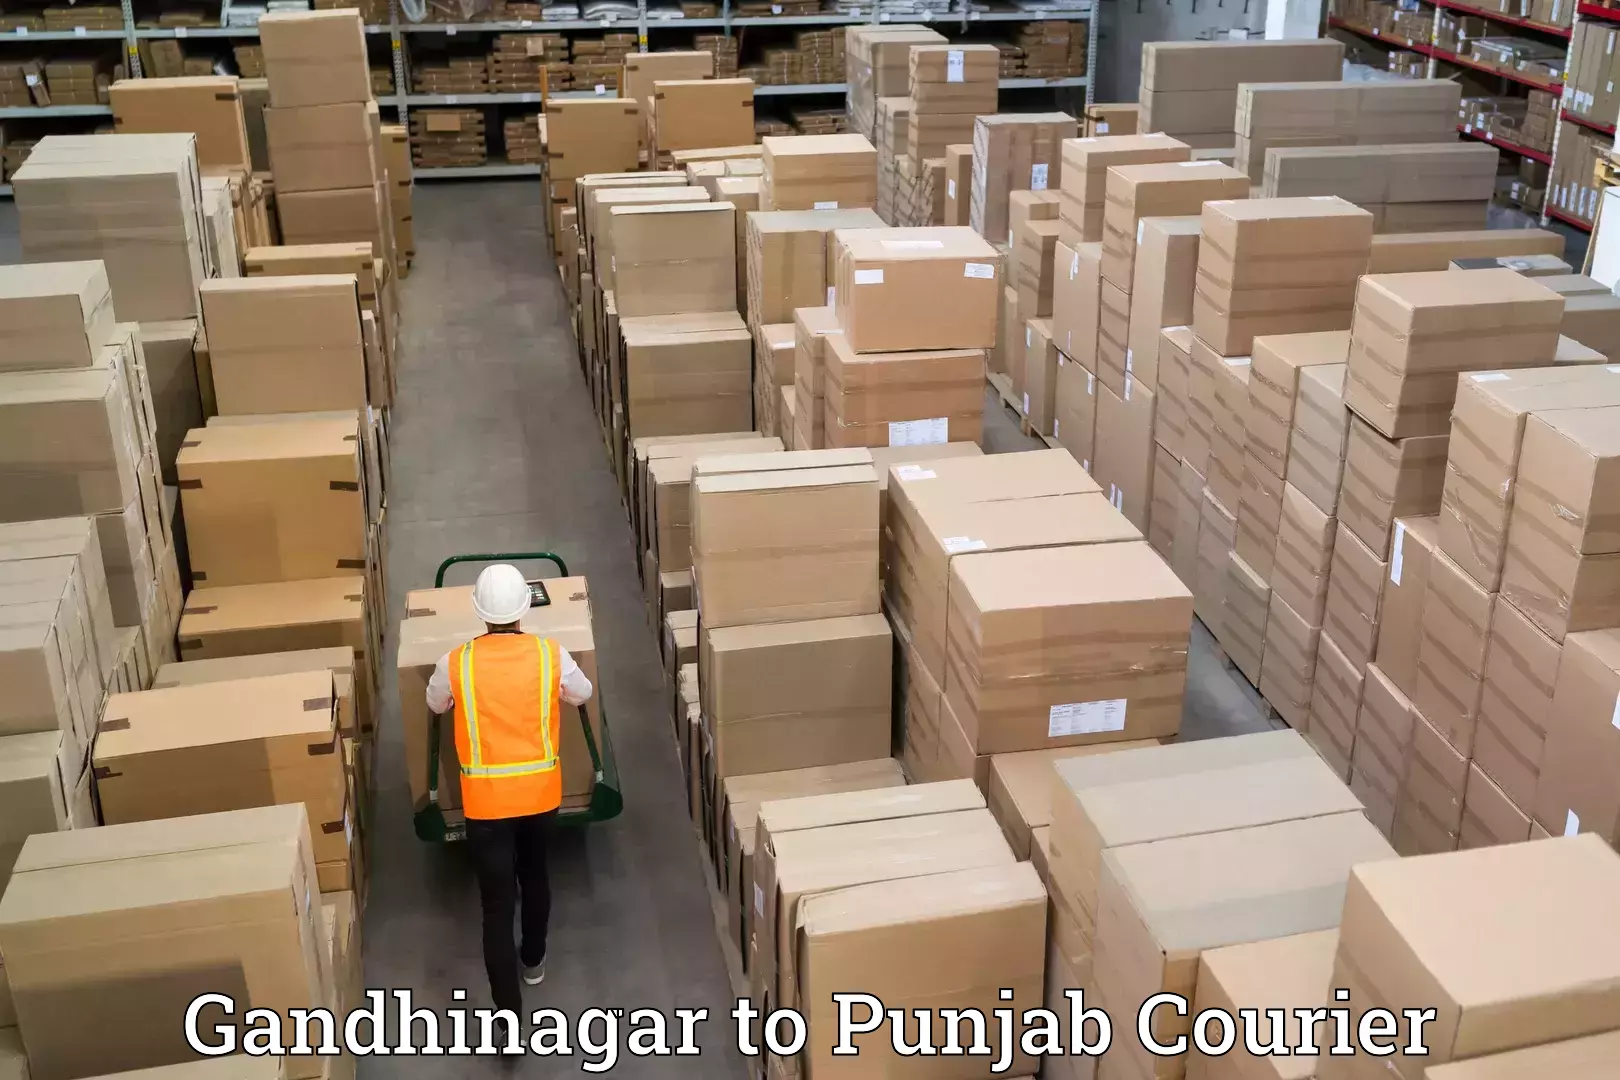 Moving and handling services Gandhinagar to Amritsar